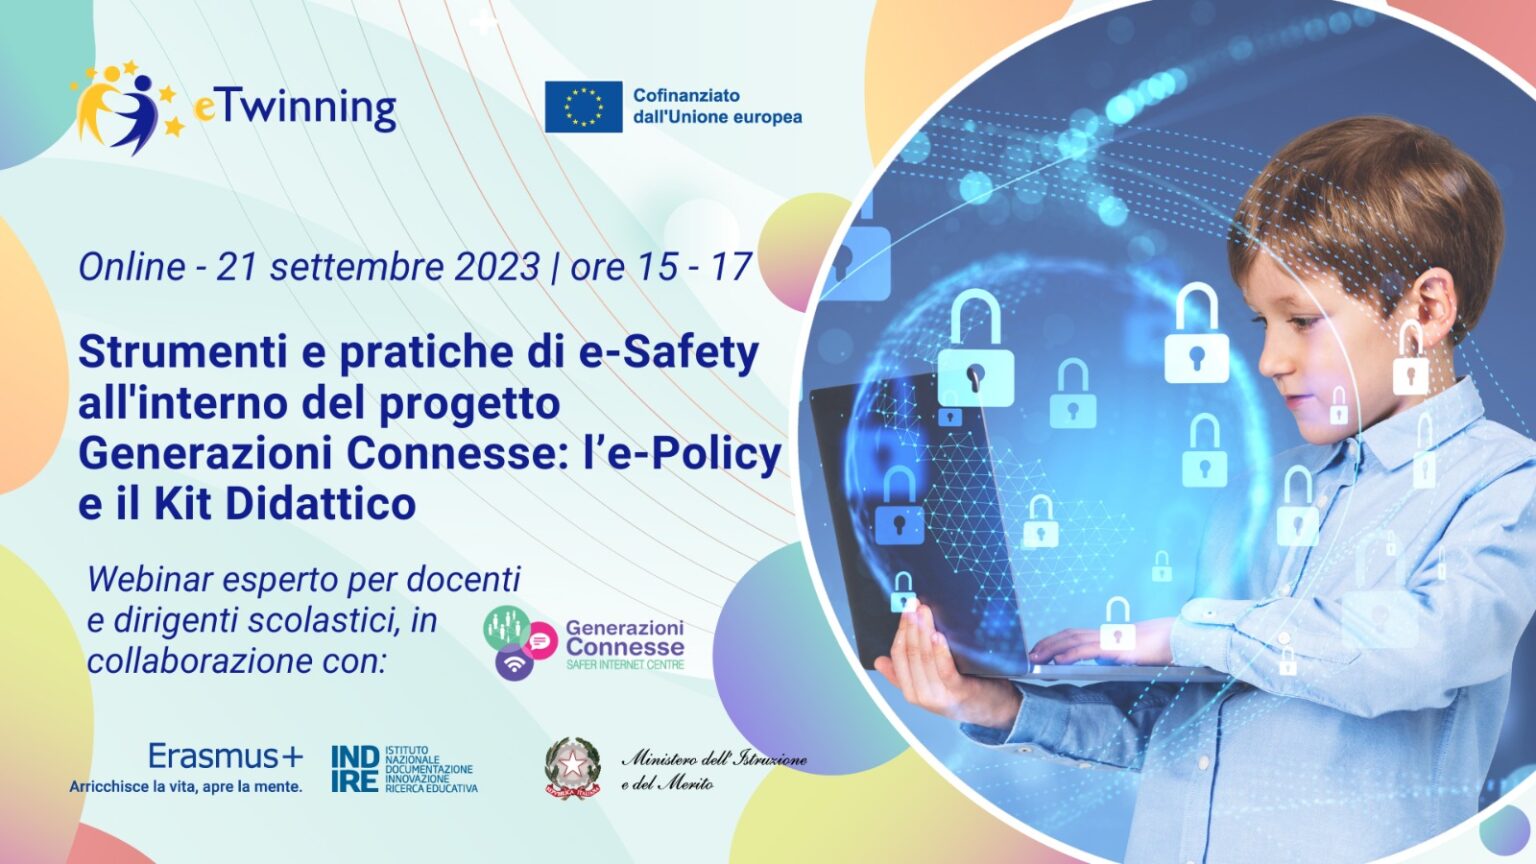 Strumenti e pratiche di e-Safety all’interno del progetto Generazioni Connesse: l’e-Policy e il Kit Didattico